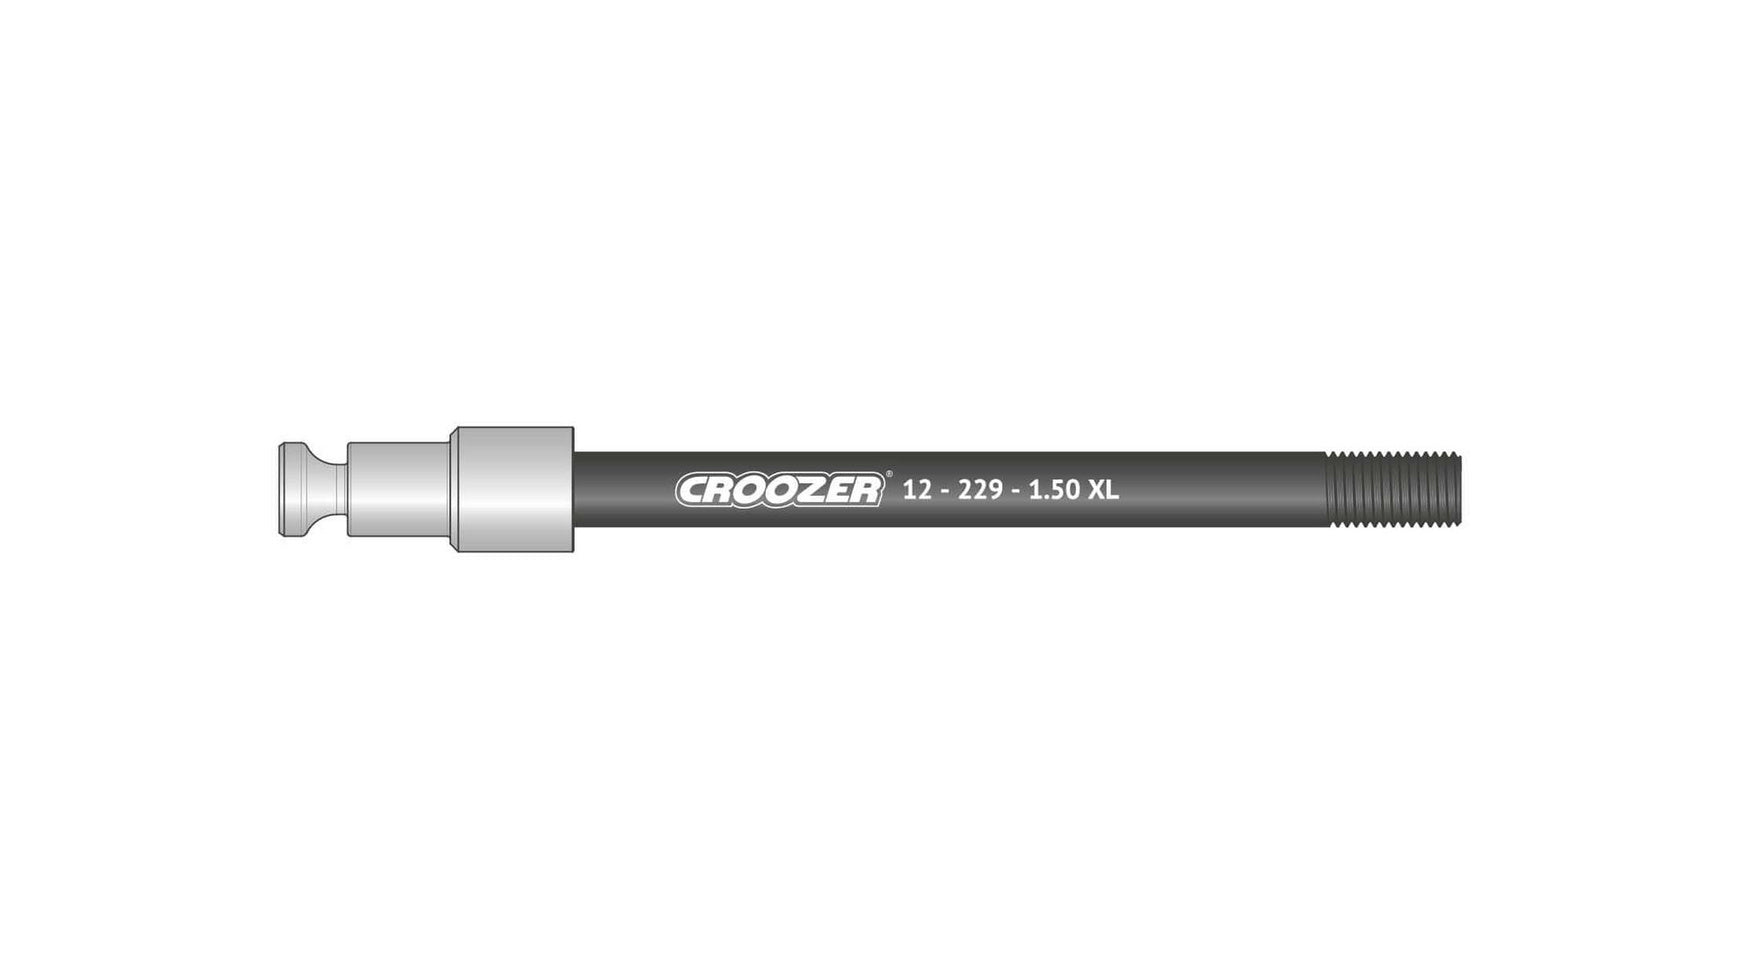 Croozer 12-229-1.50 XL von CROOZER